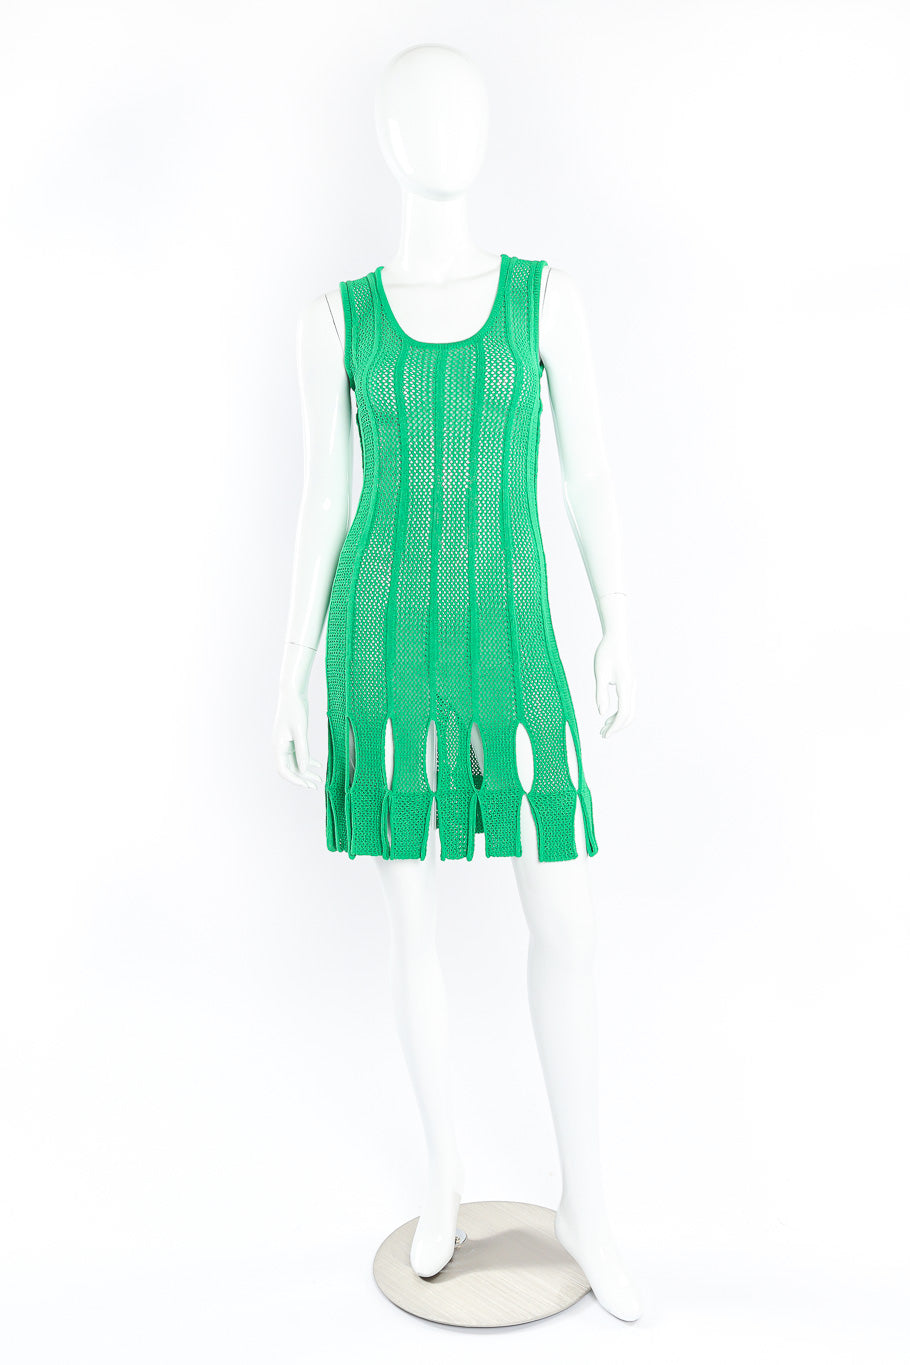 Mesh dress by Bottega Veneta on mannequin @recessla